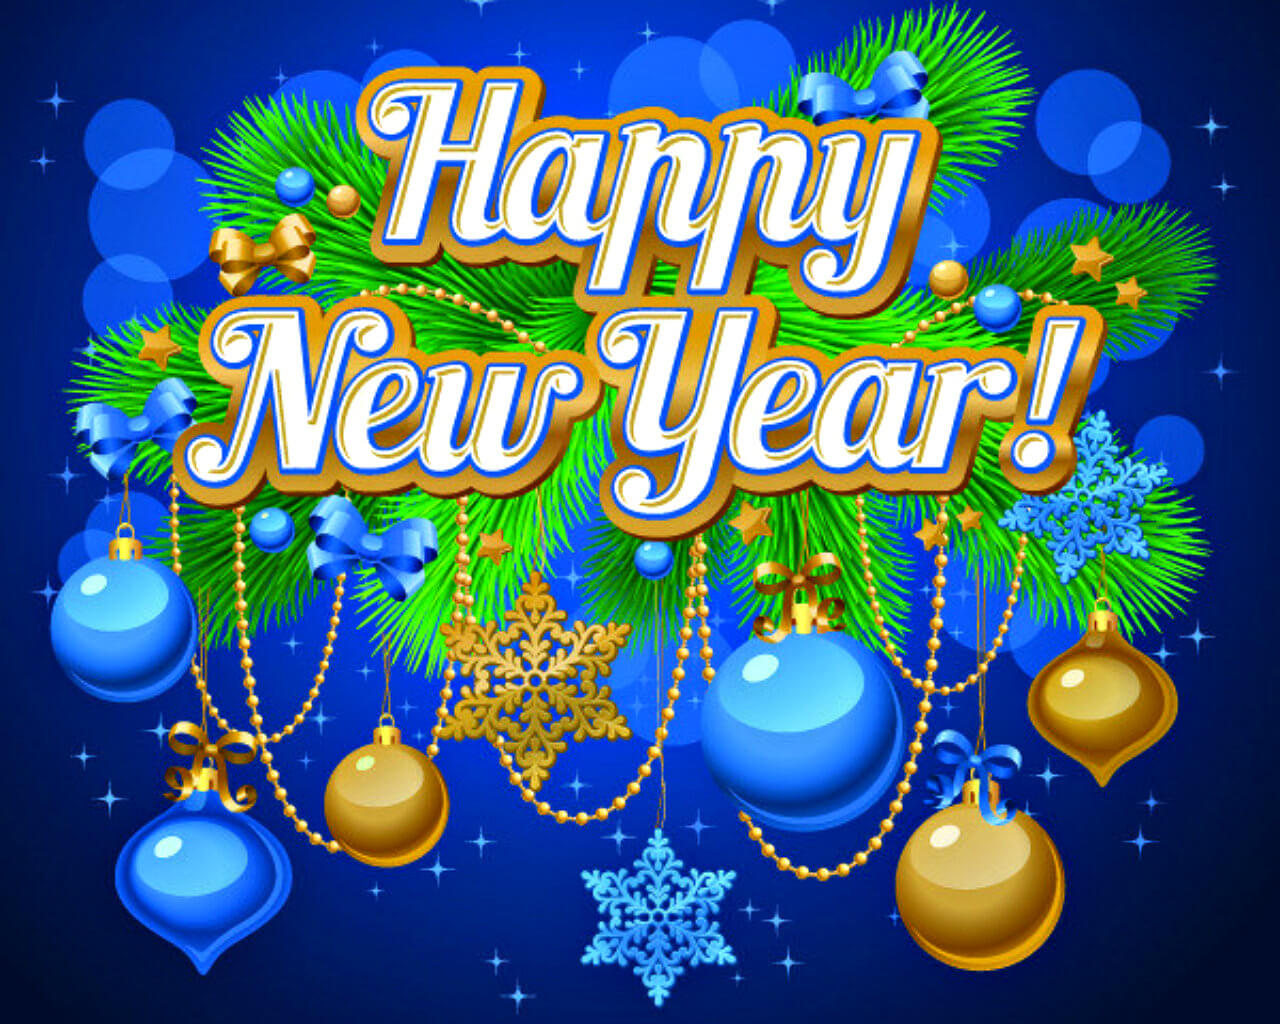 새해 복 많이 받으세요 2018 월페이퍼,마조 렐 블루,폰트,크리스마스 이브,행사,삽화